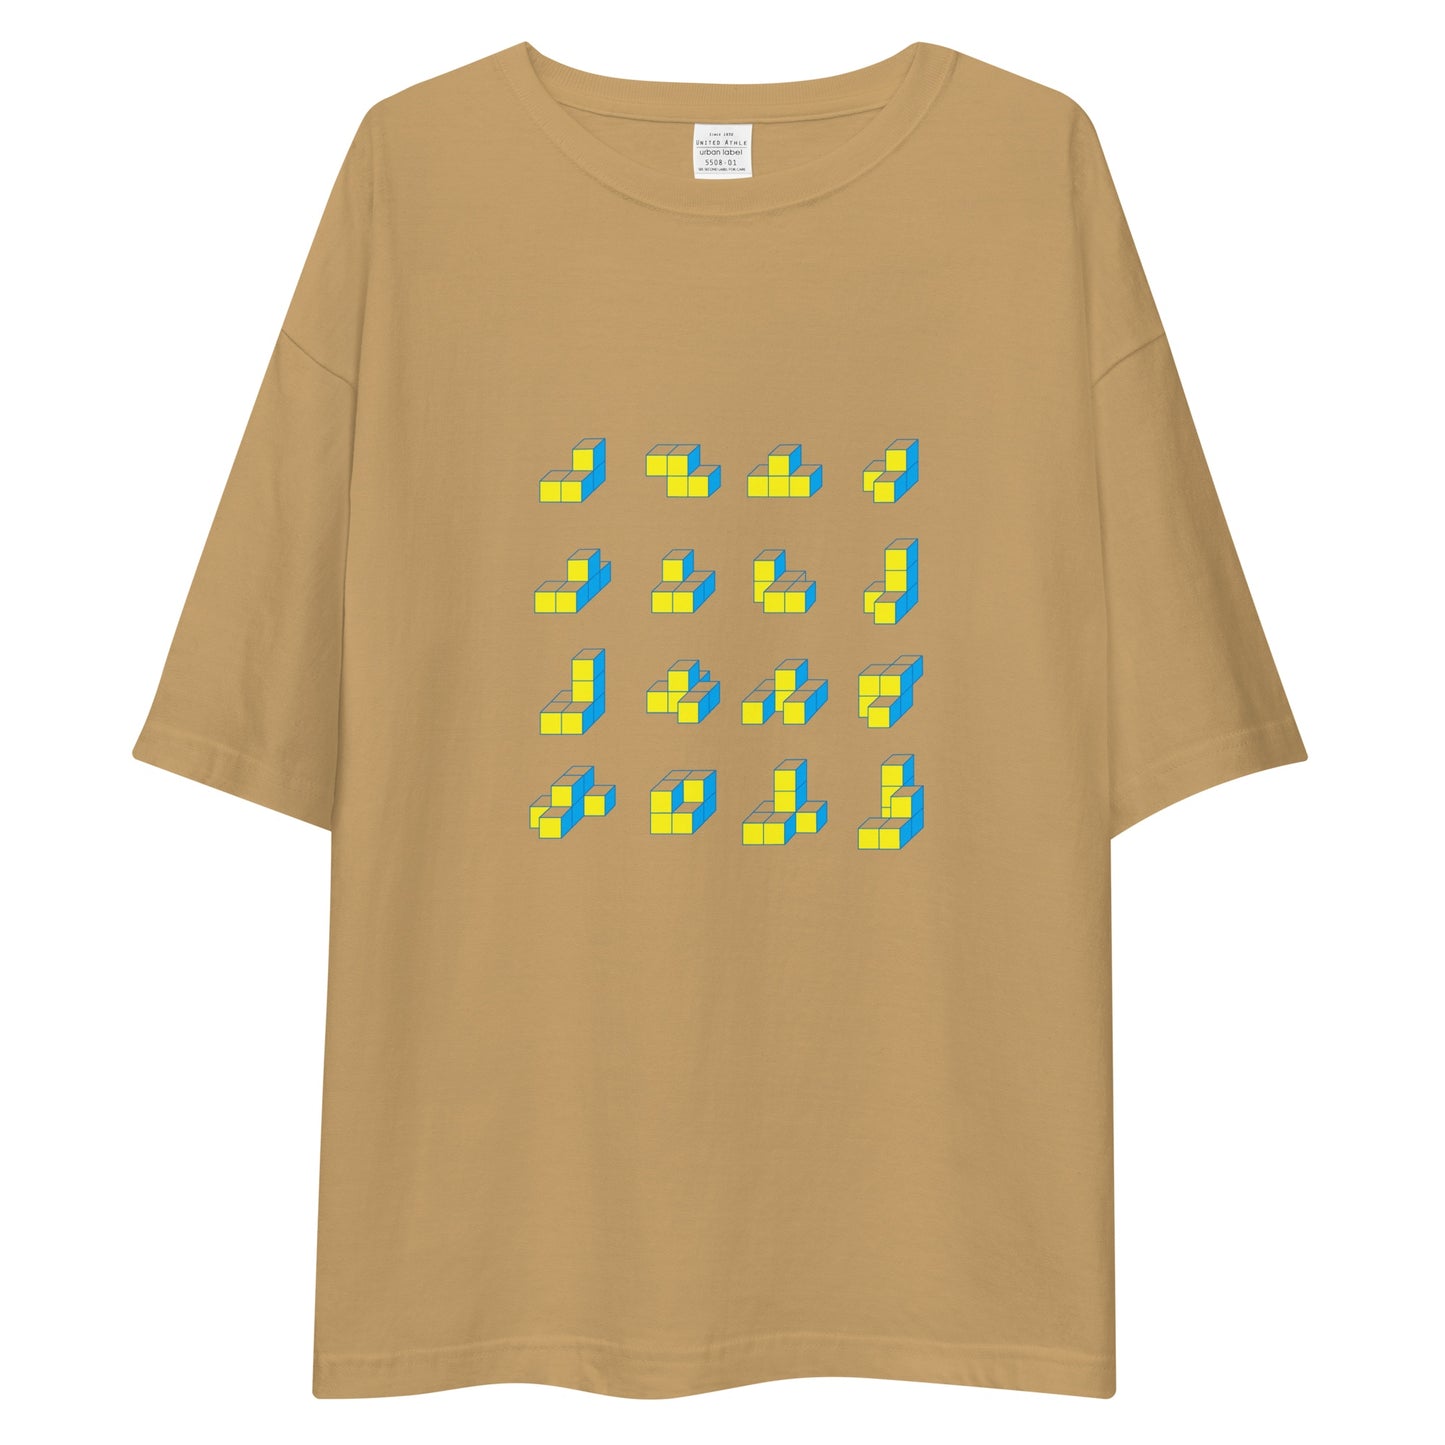 キューブ 黄×青 ビッグシルエットTシャツ [ライトカラー] サンドカーキ S 00